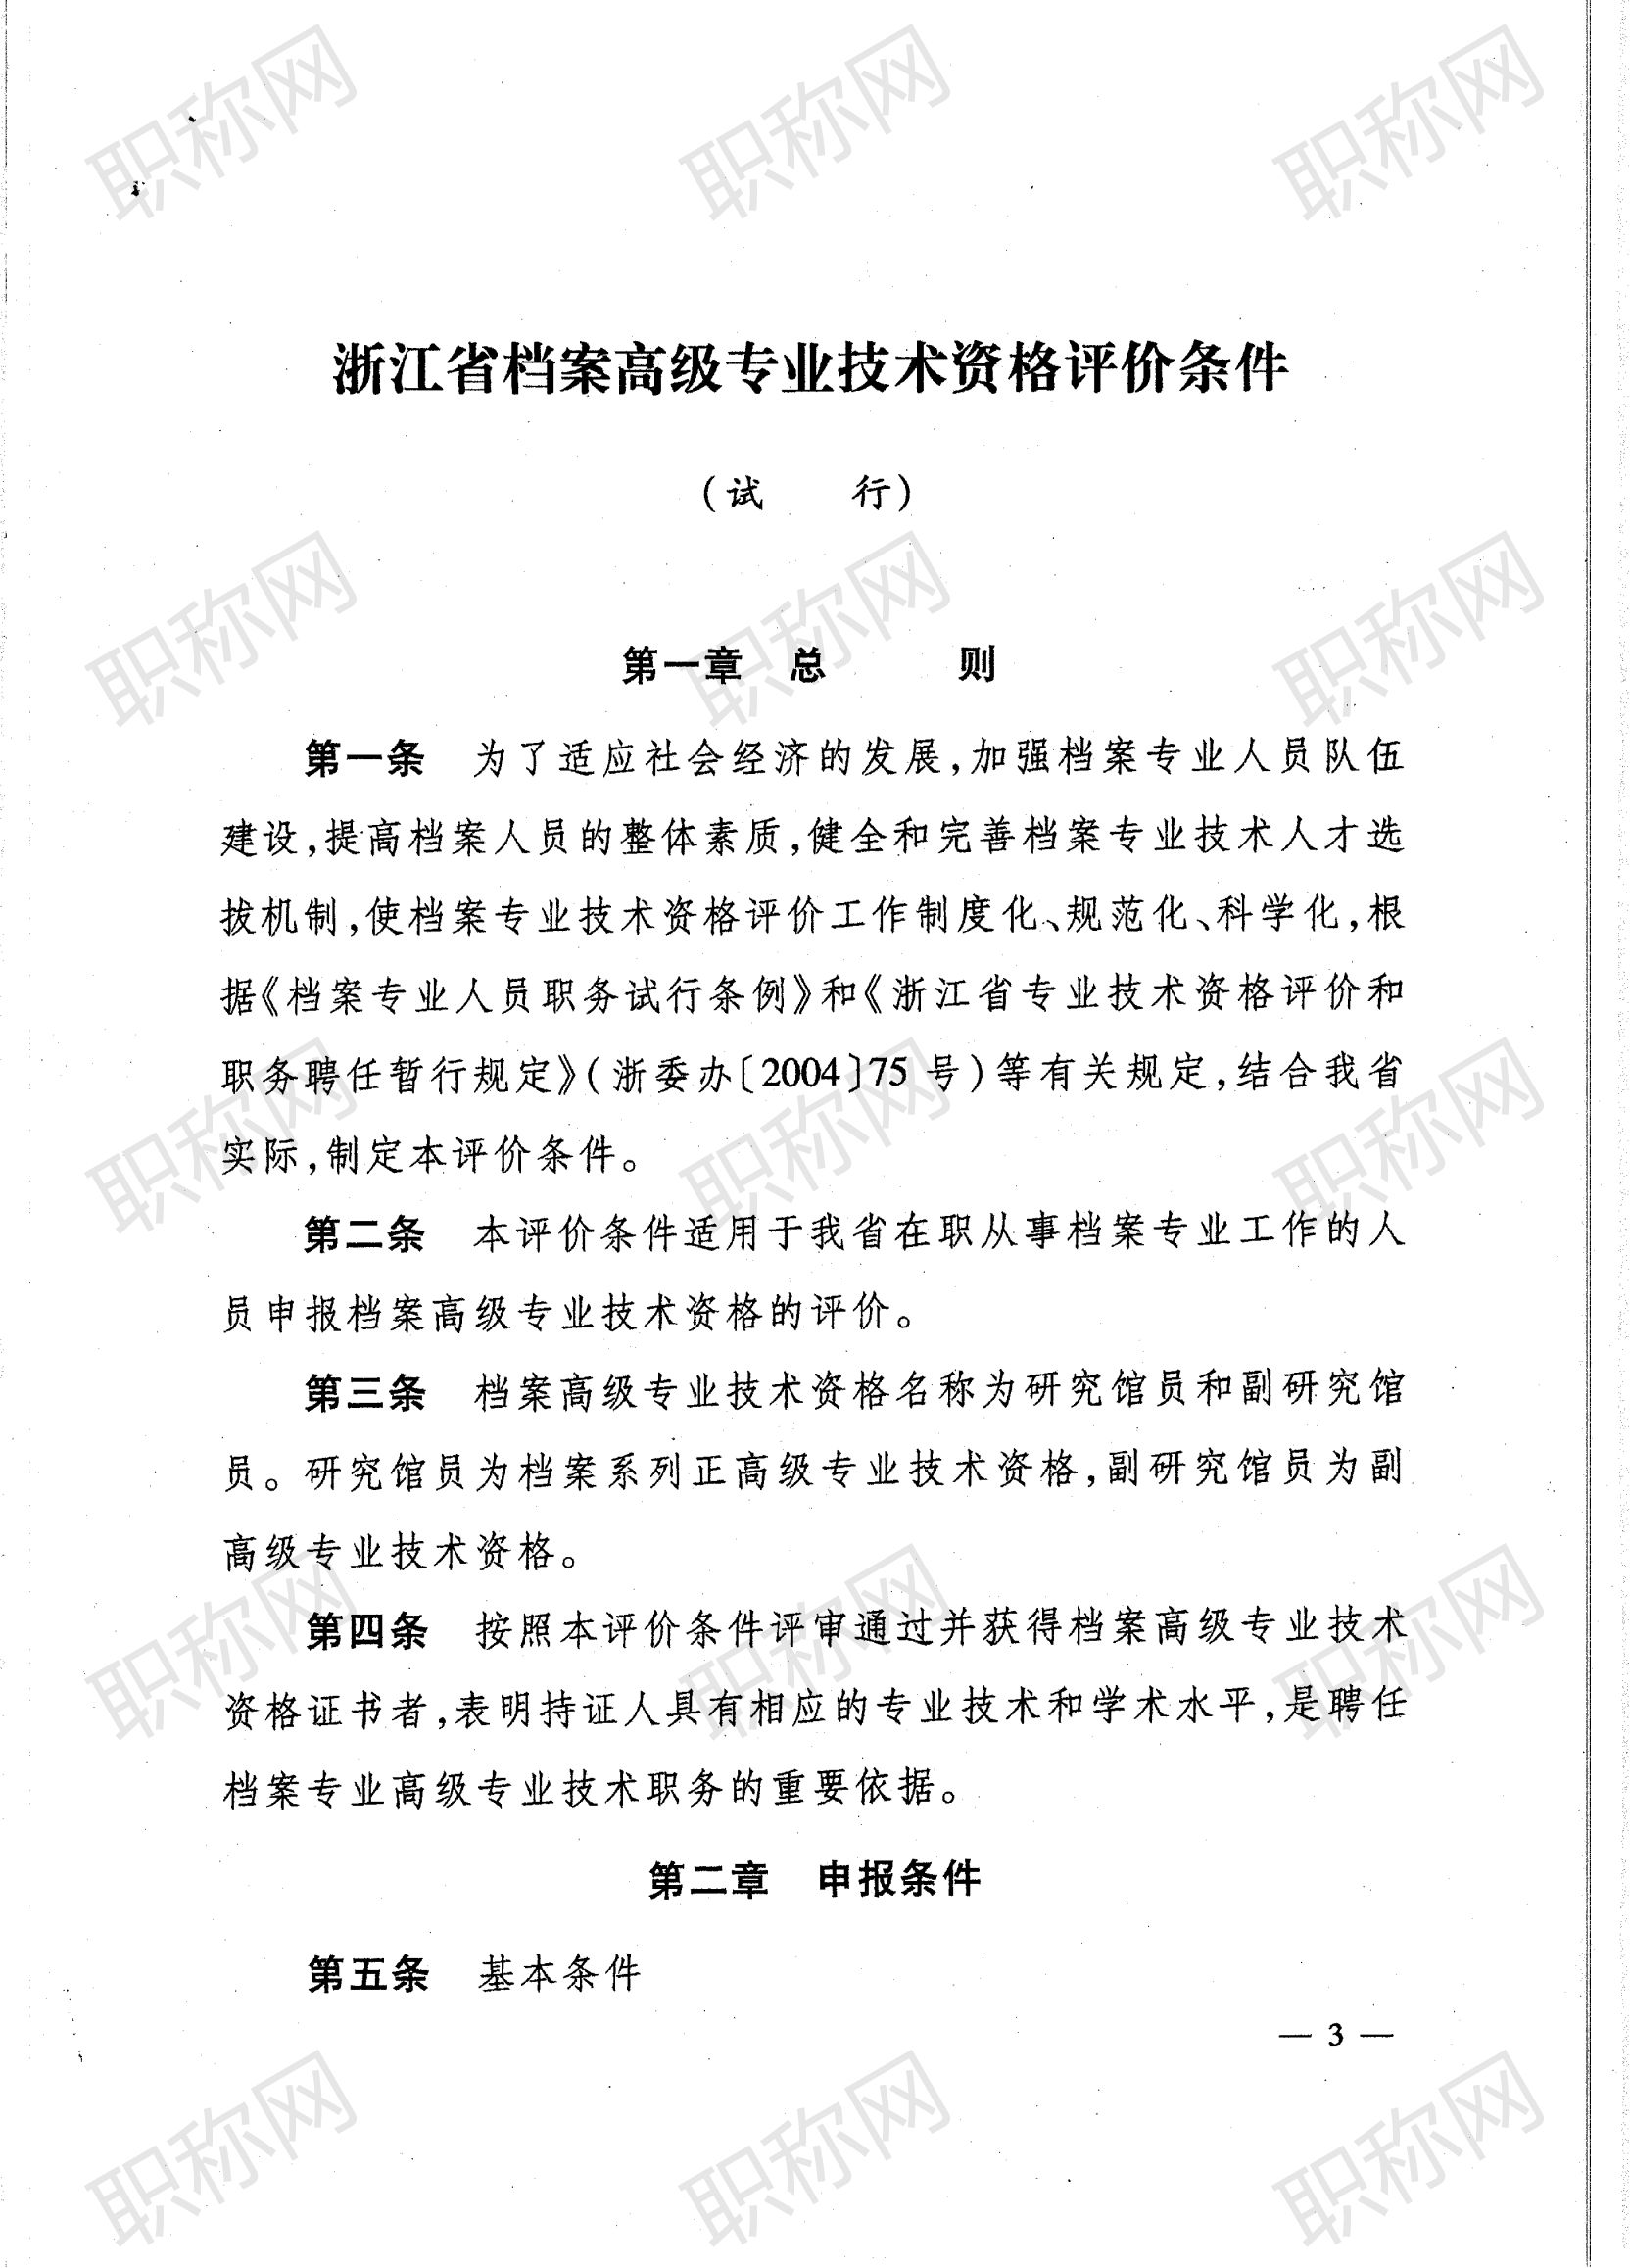 浙江省档案高级专业技术资格评价条件_03.png